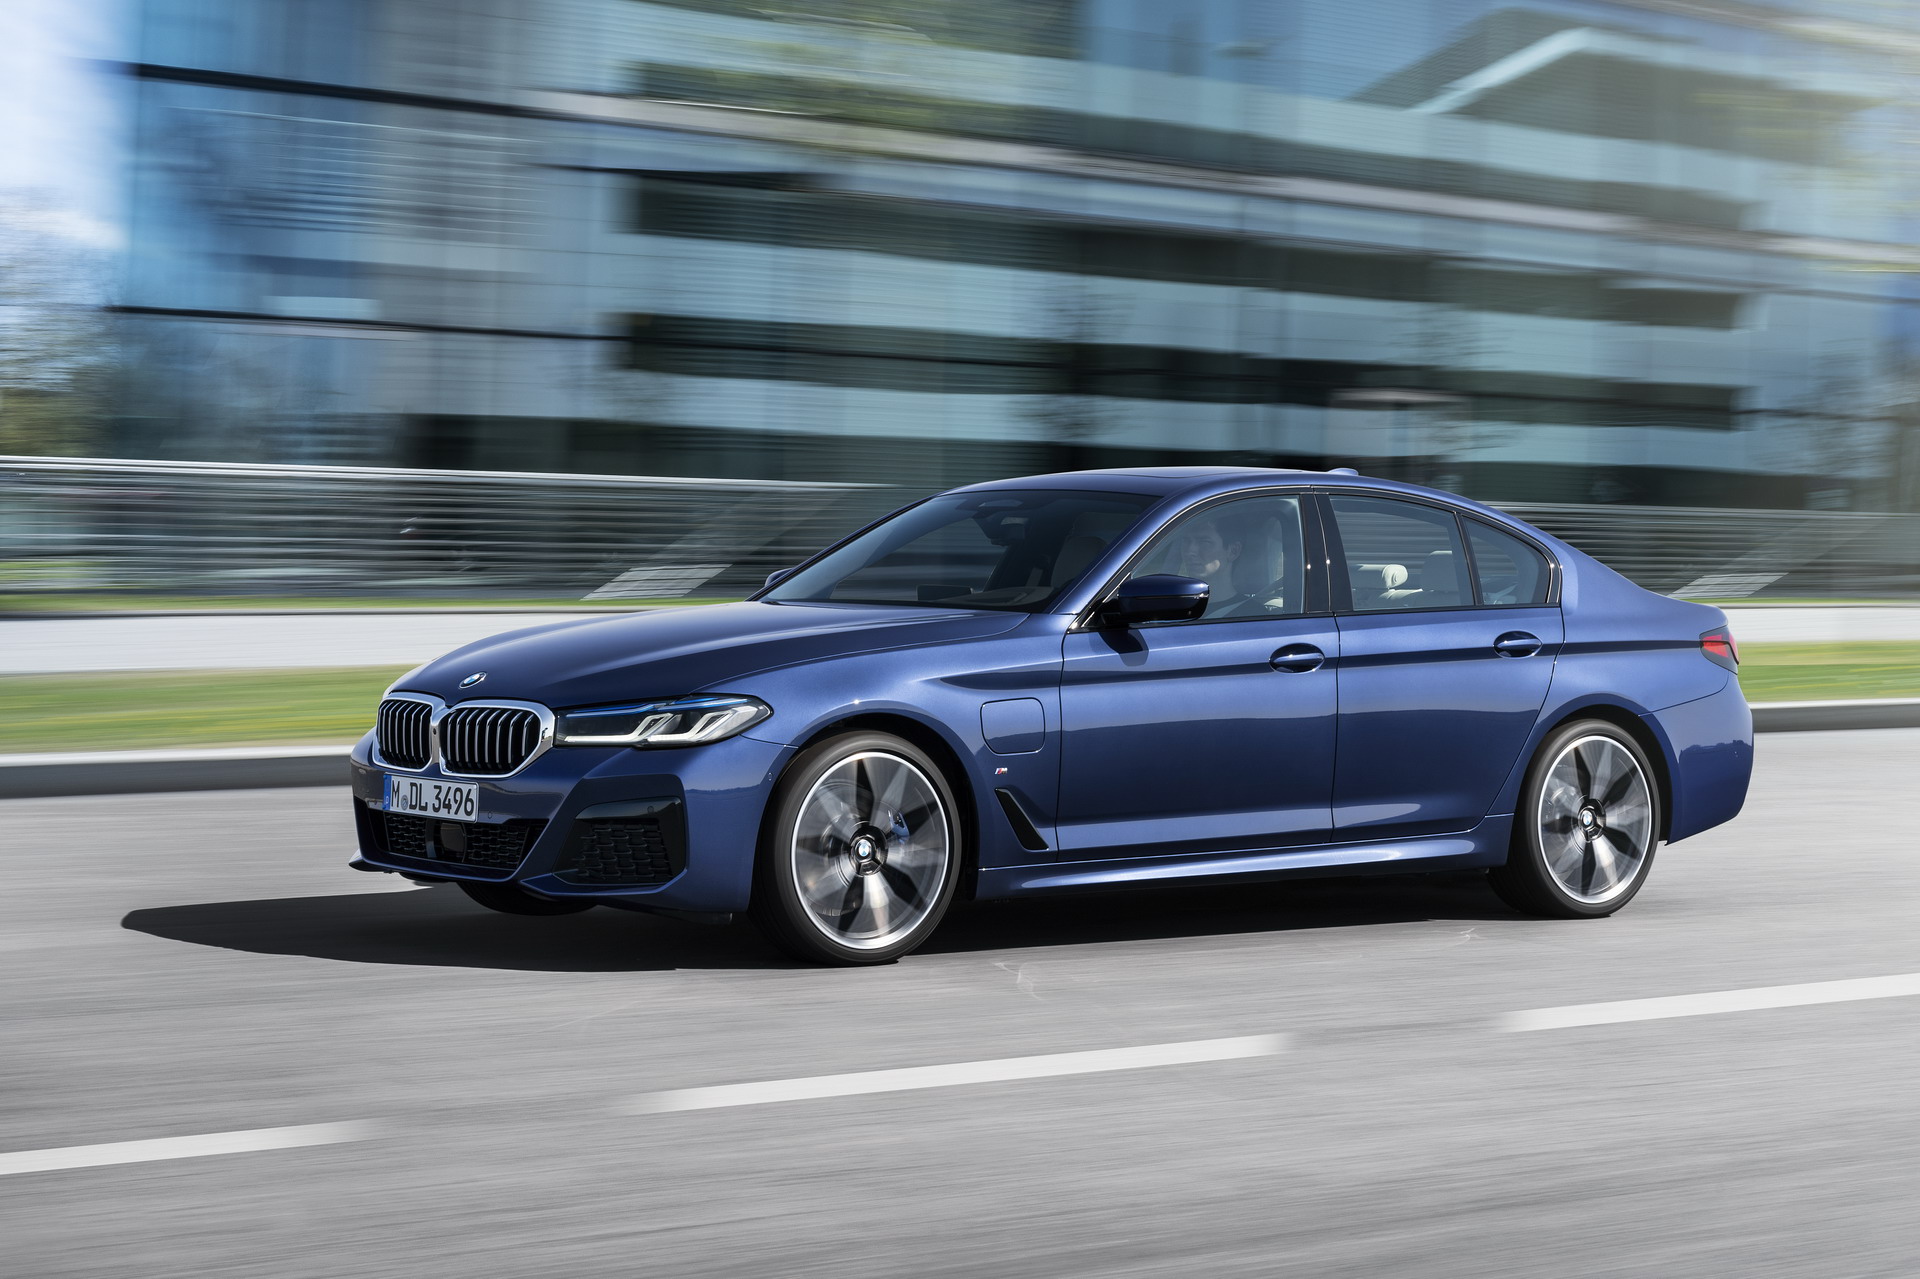 https://cdn.bmwblog.com/wp-content/uploads/2020/05/The-New-BMW-530e-M-Sport-G30-LCI-39.jpg